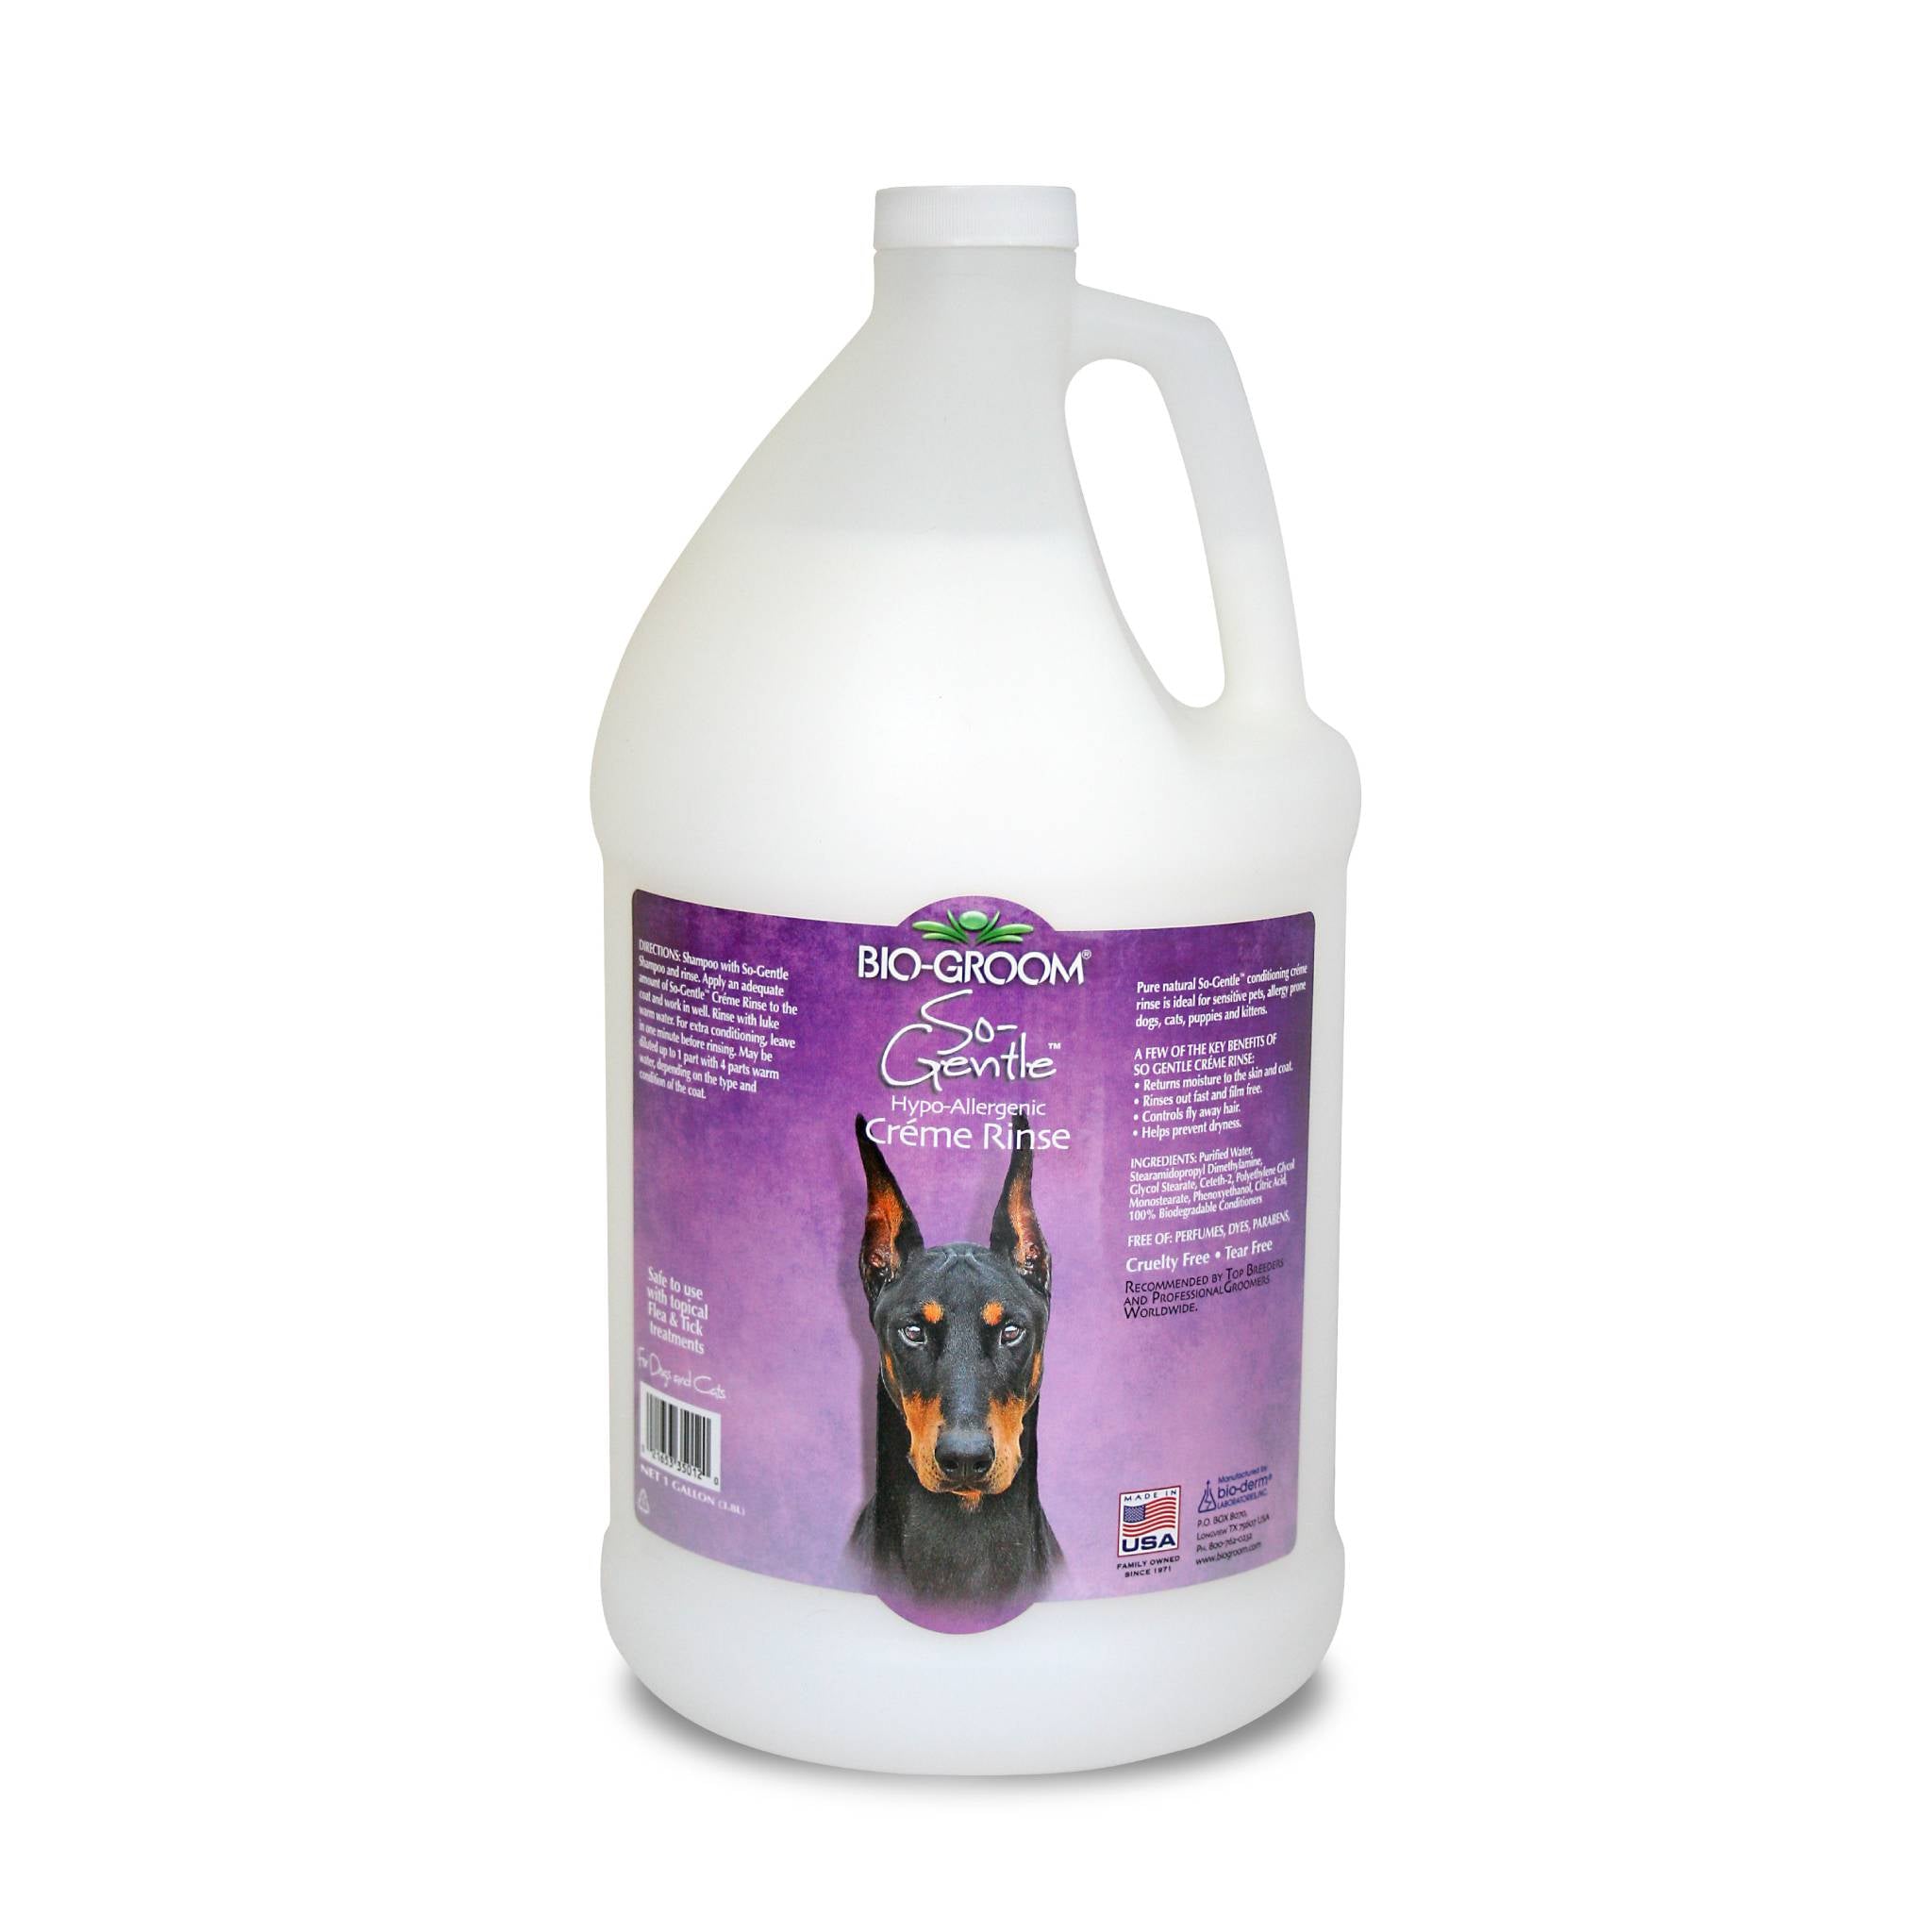 Biogroom So Gentle Hypo-Allergenic Crème Rinse Dog Conditioner